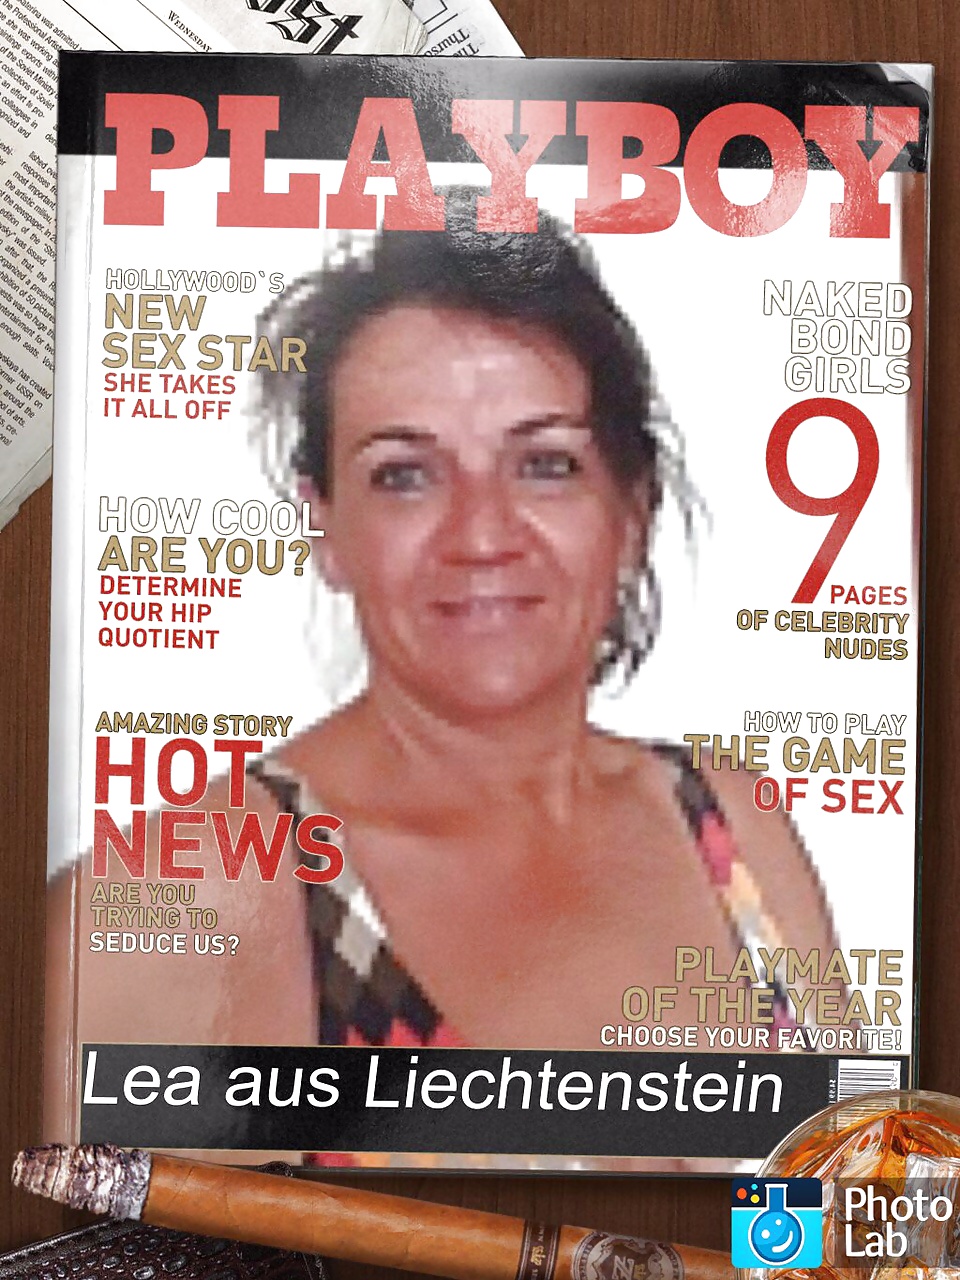 Lea aus Liechtenstein adult photos